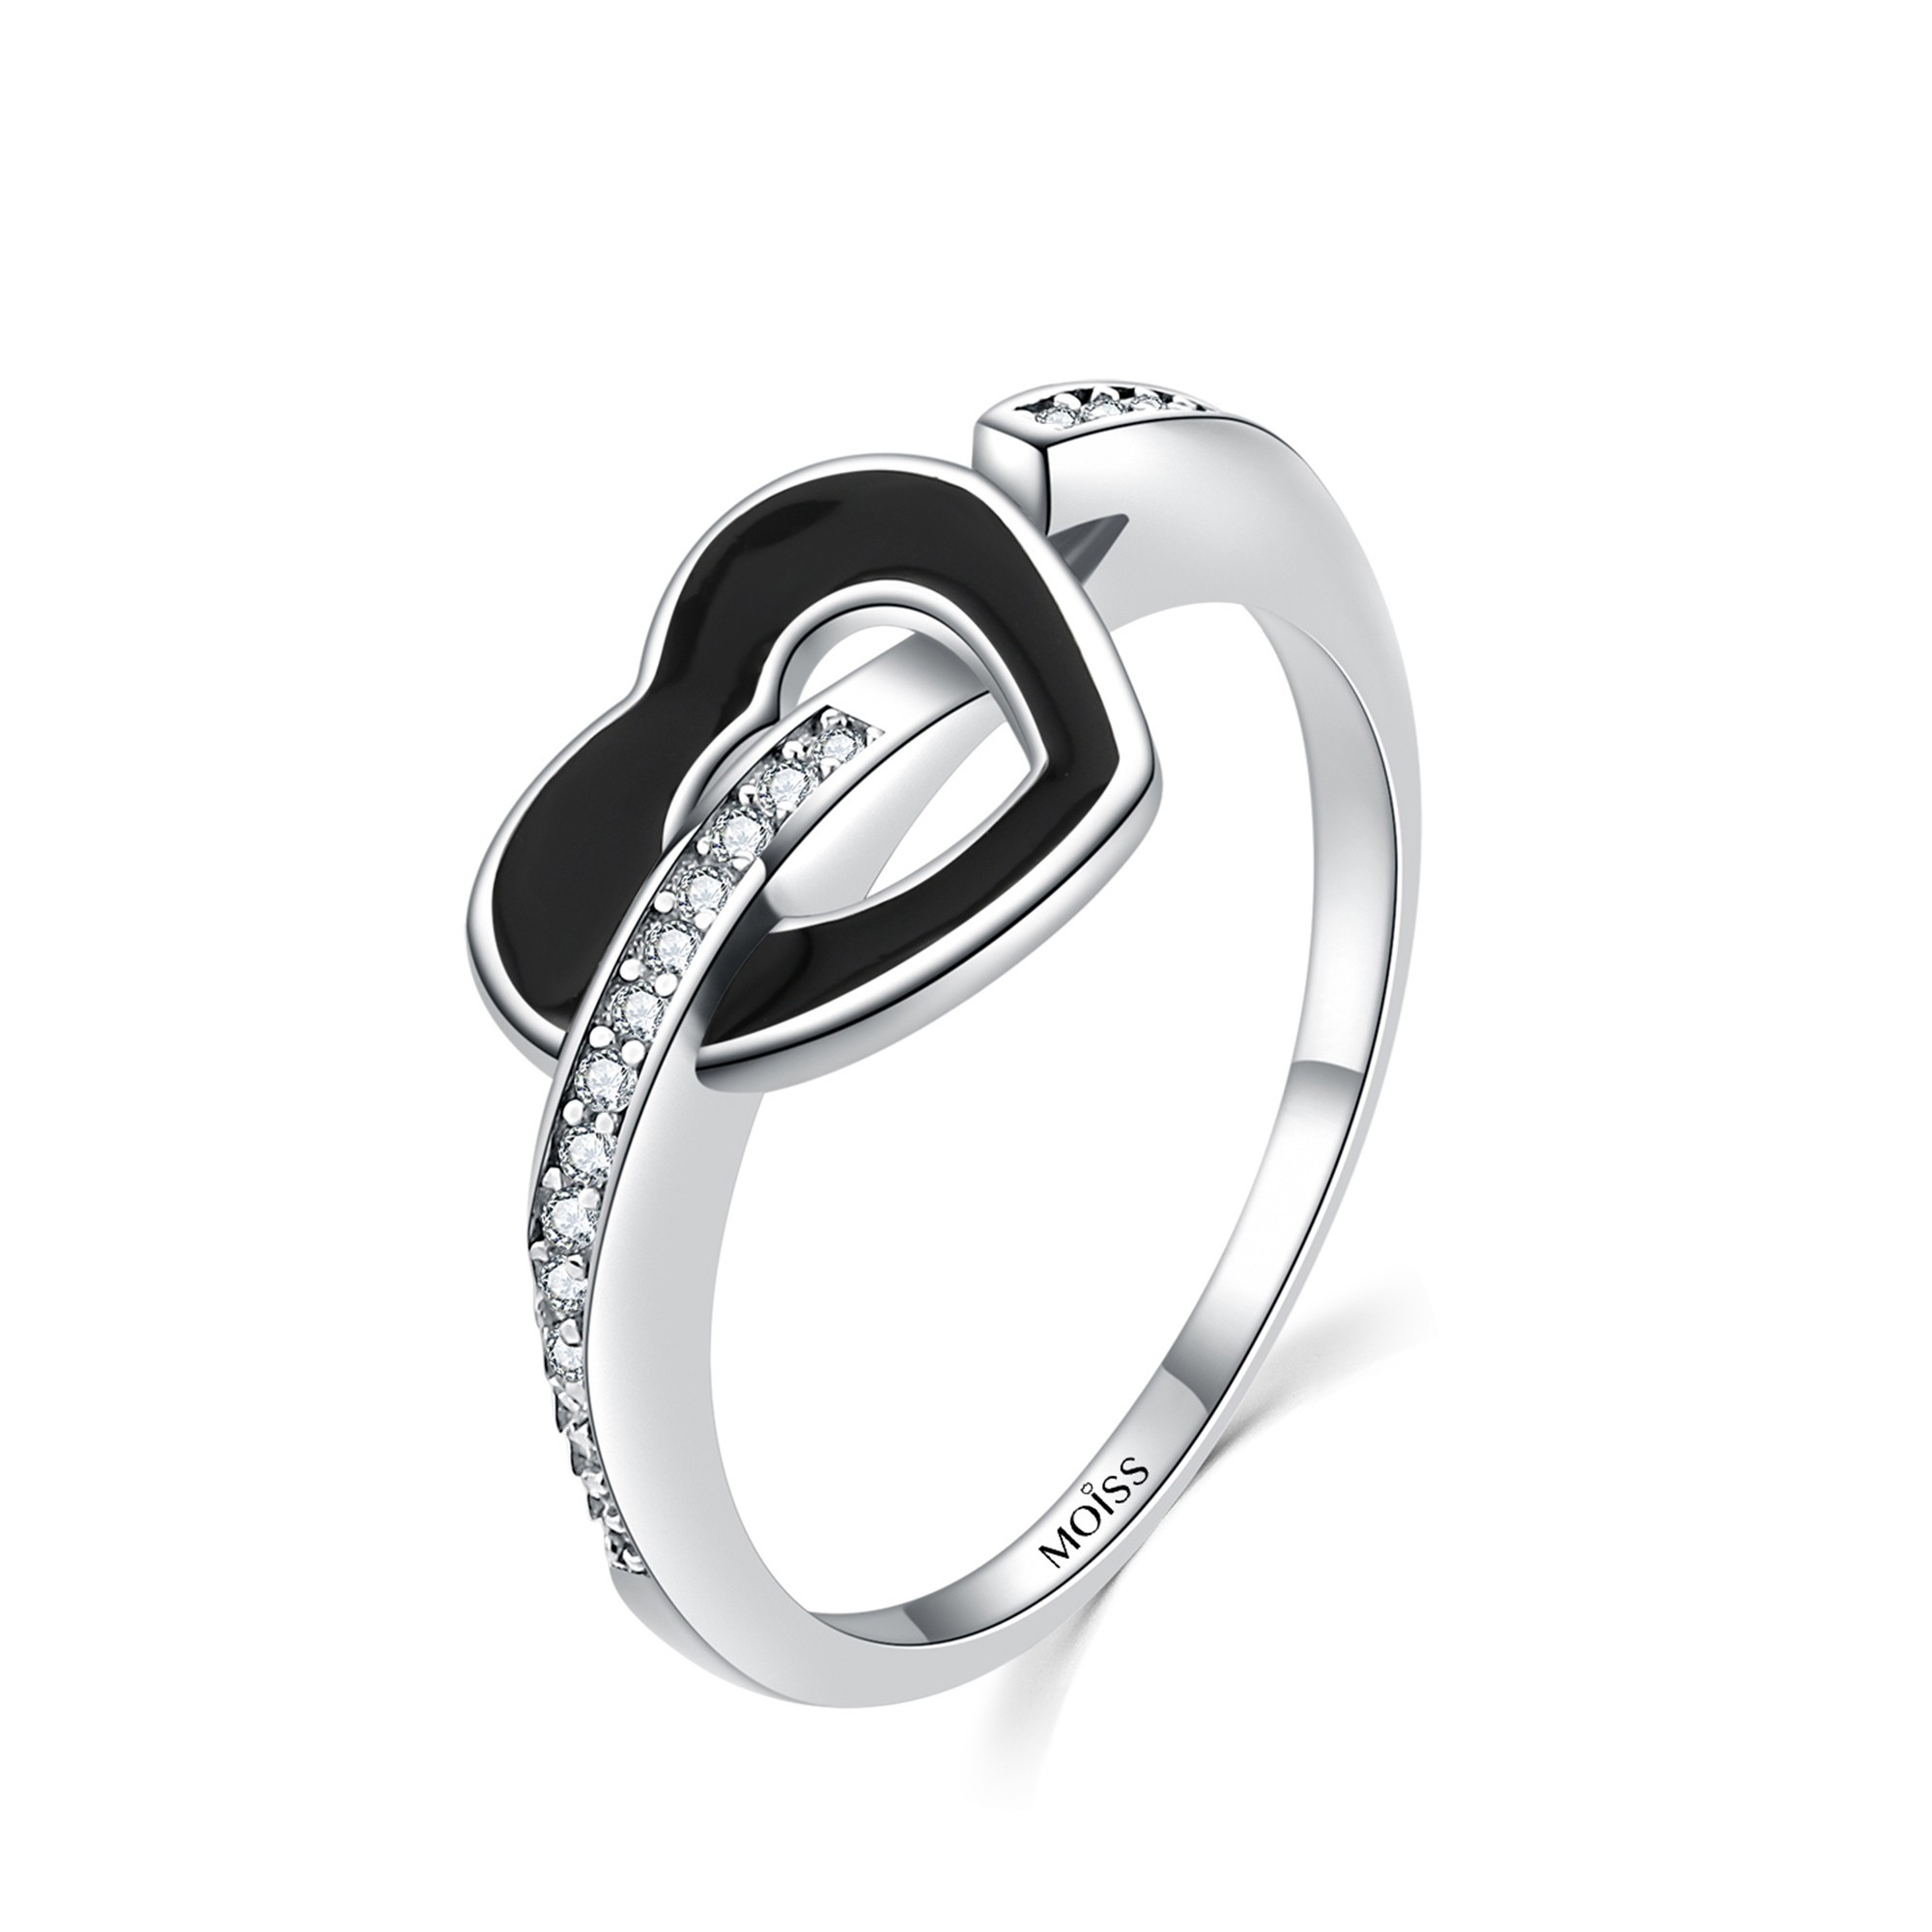 MOISS Moiss stříbrný prsten ČERNÉ SRDCE R0002060 Velikost 56 mm R0002063